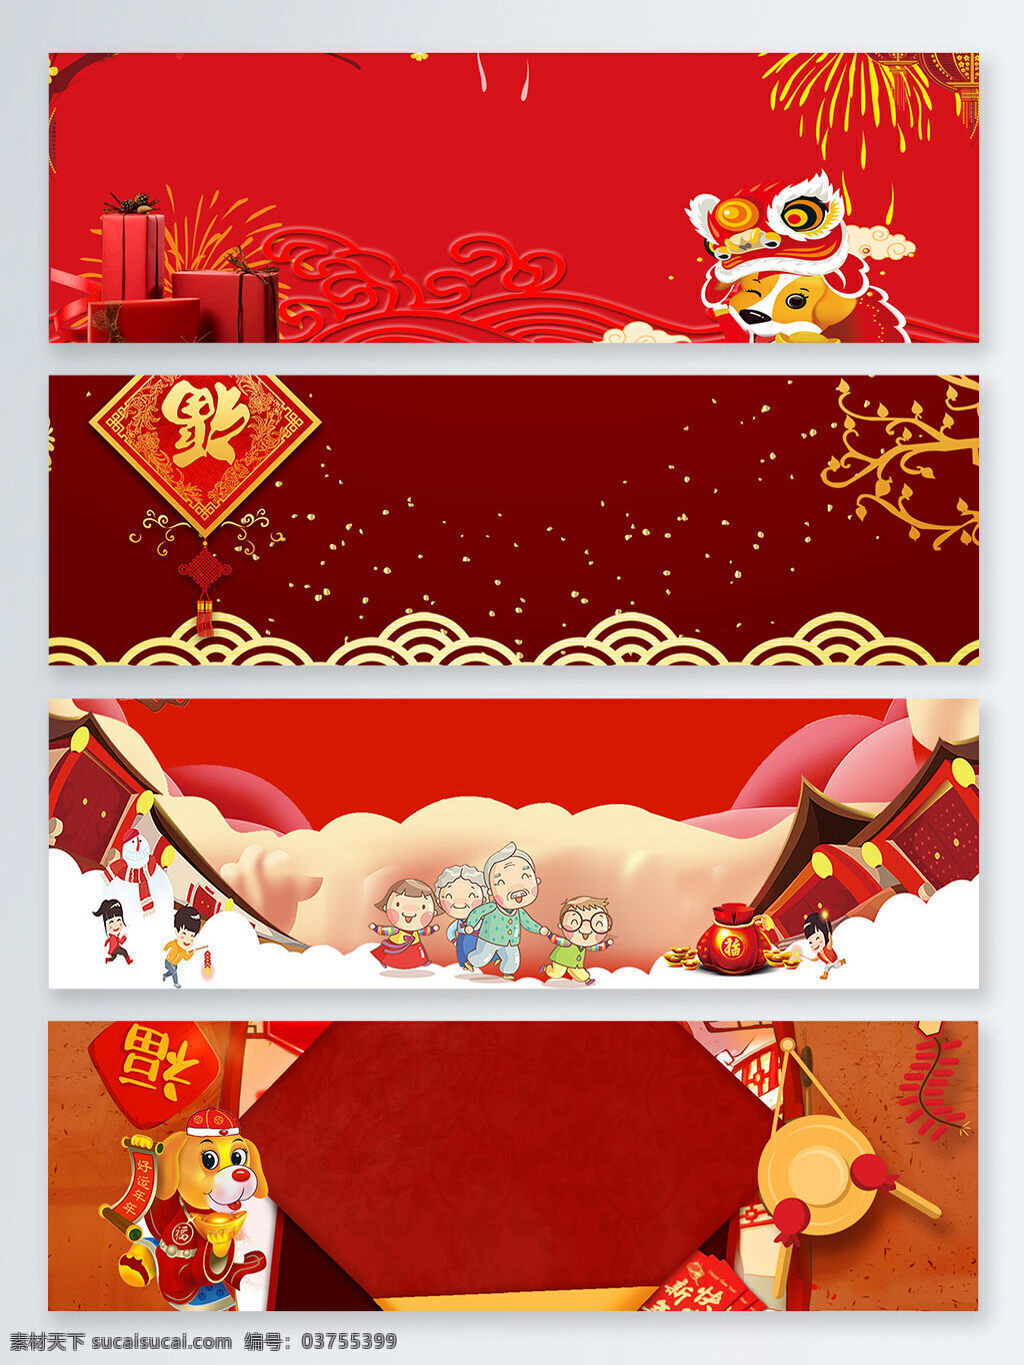 中国 传统节日 新年 红色 banner 背景 鞭炮 福 狗年 金色 卡通狗 礼品 烟花 云纹 中国传统节日